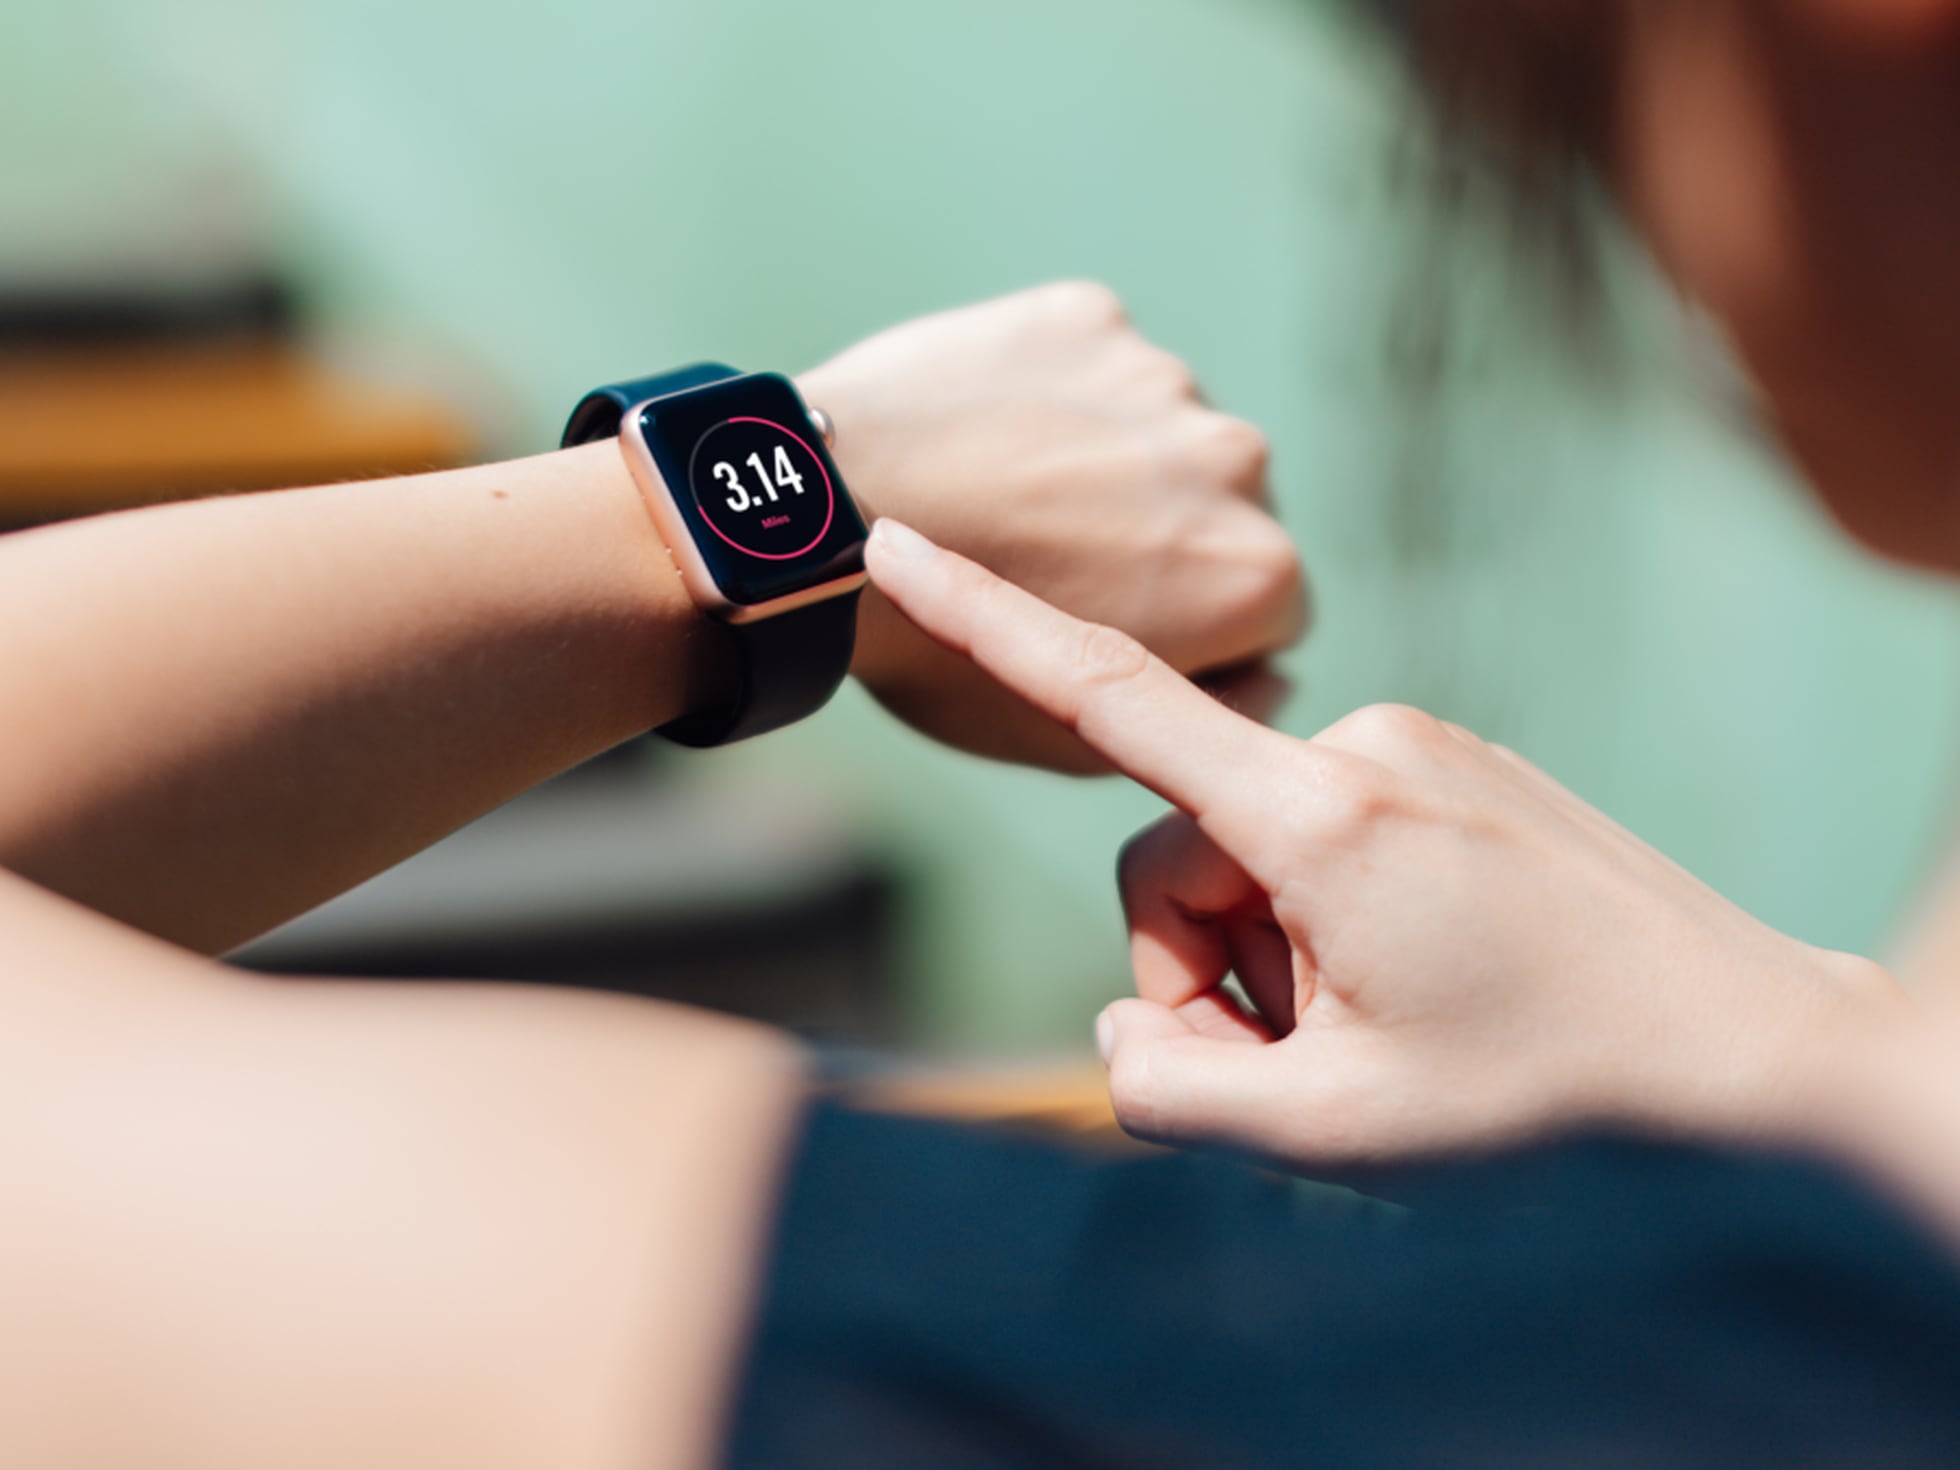 Huawei Watch Fit 2 llega a España con un cambio de estilo para los  smartwatches